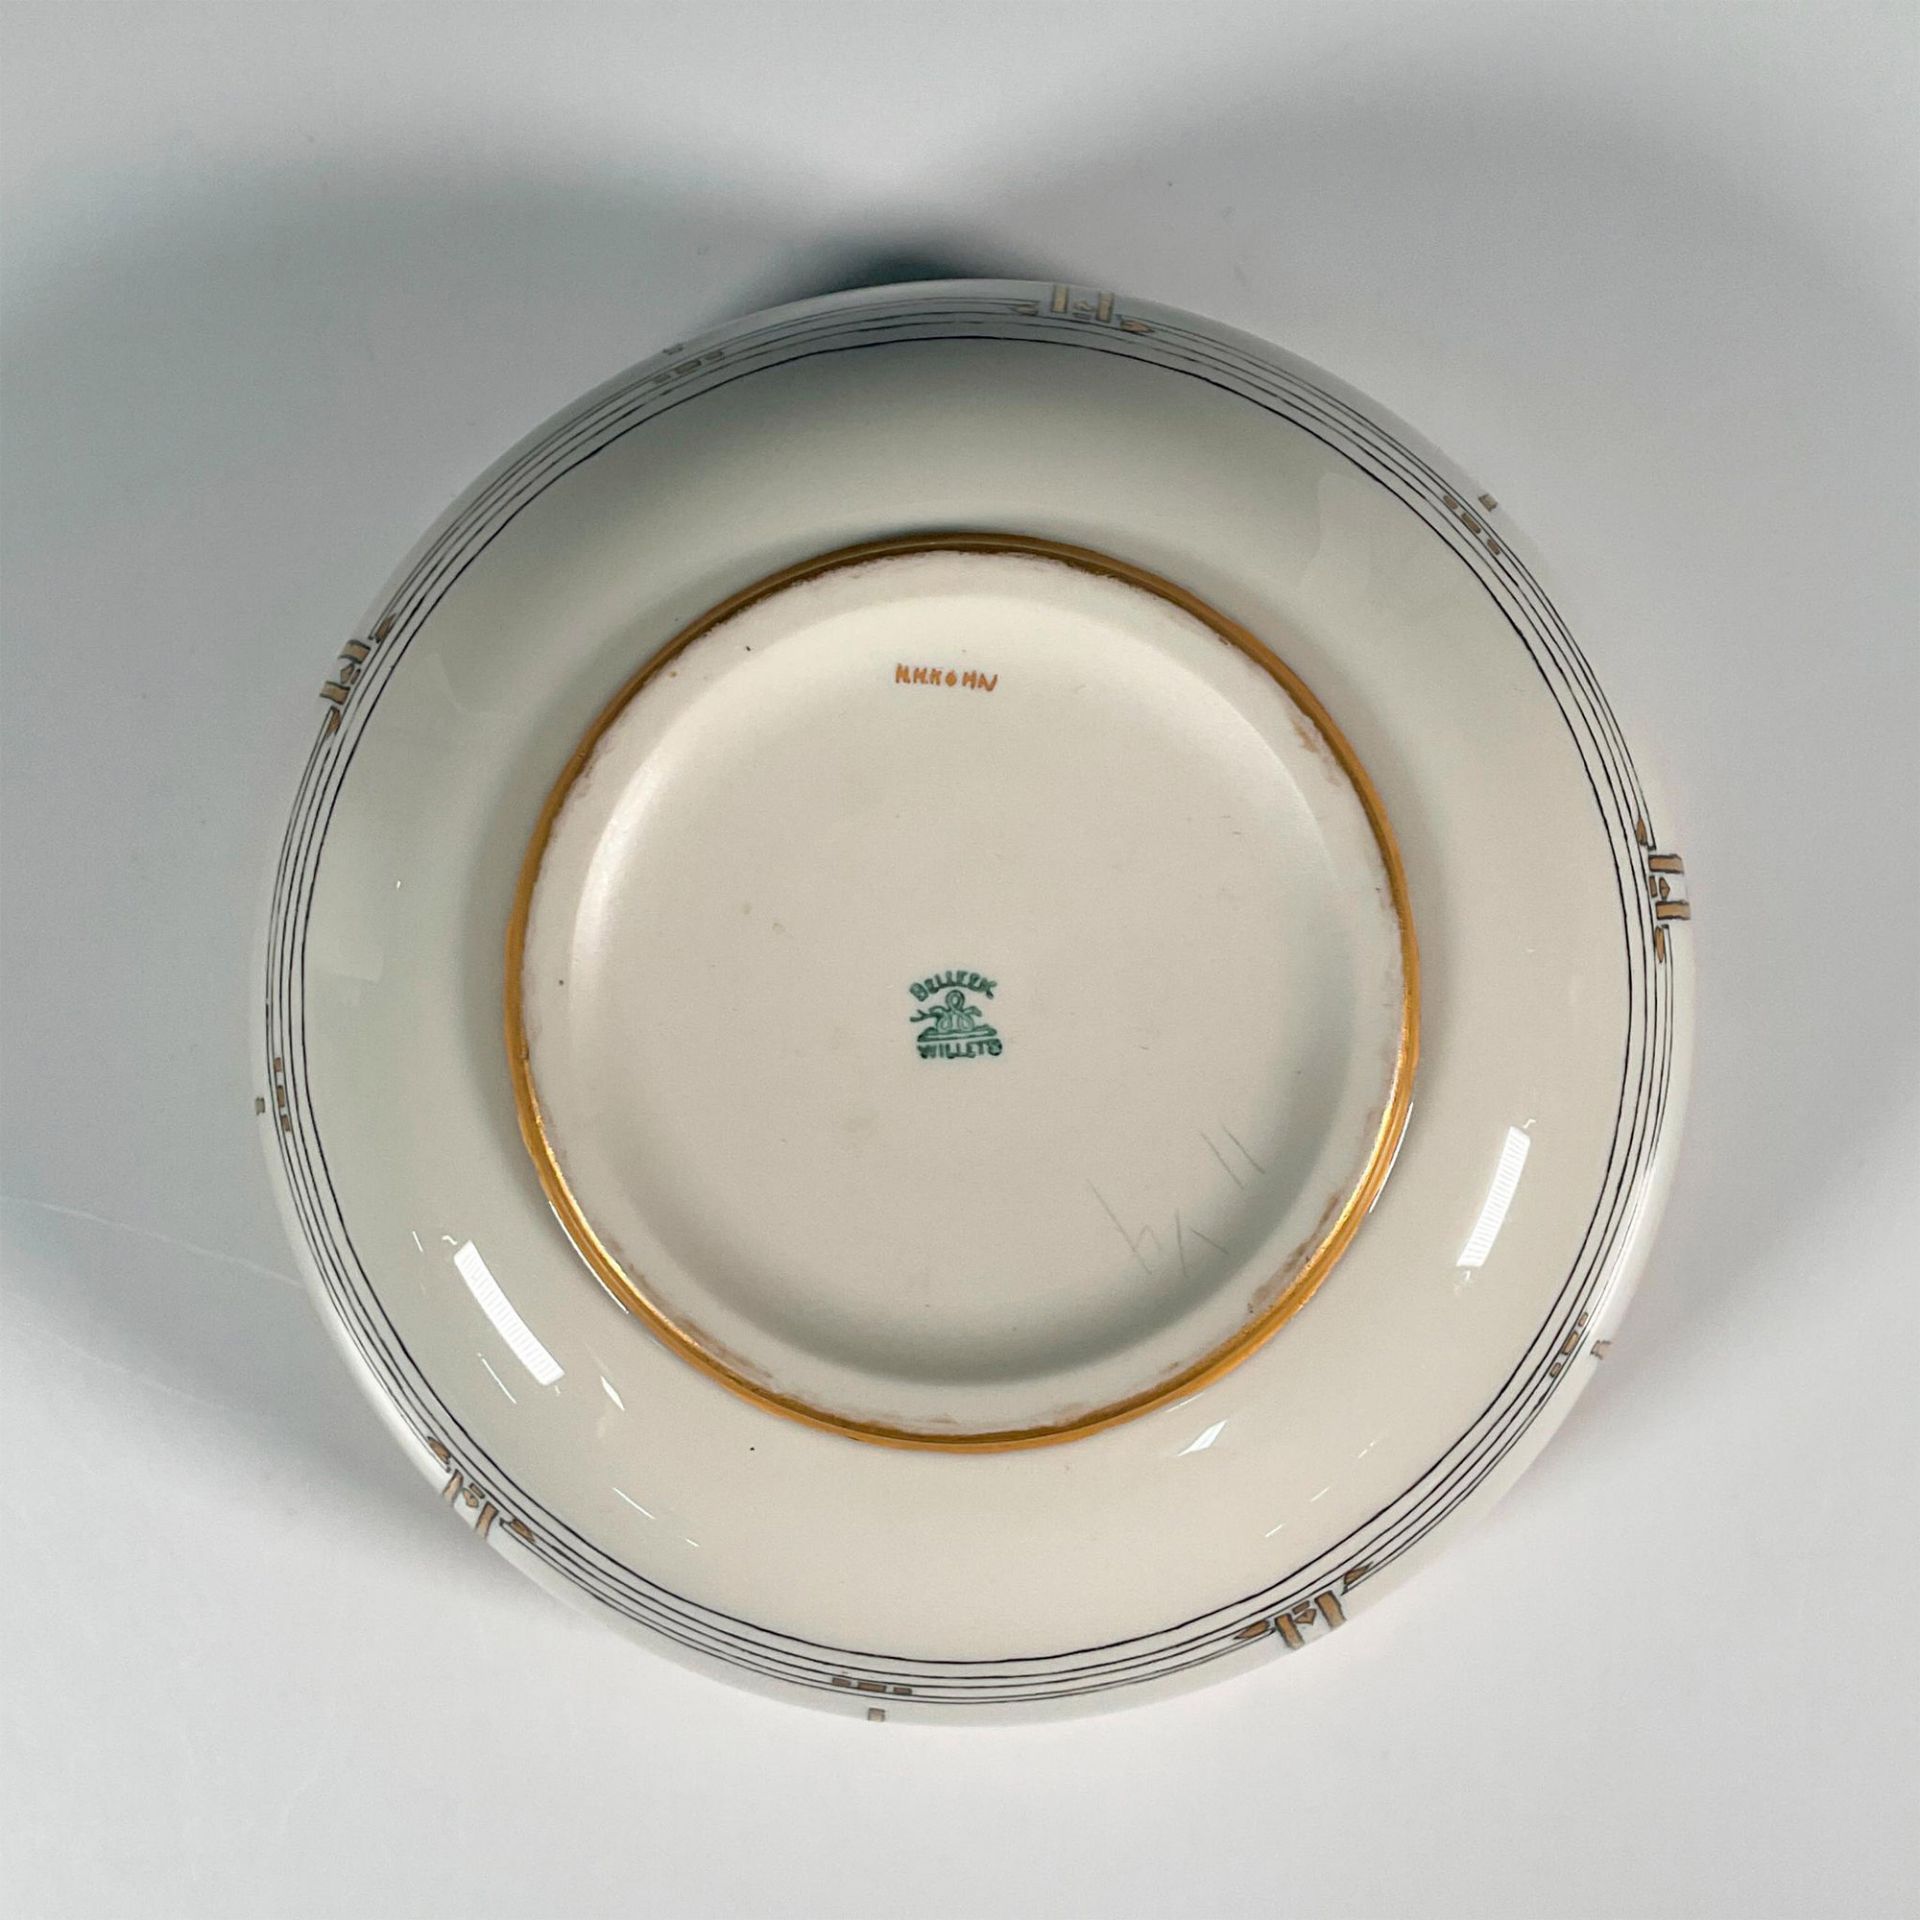 Willets American Belleek Porcelain Bowl - Image 3 of 3